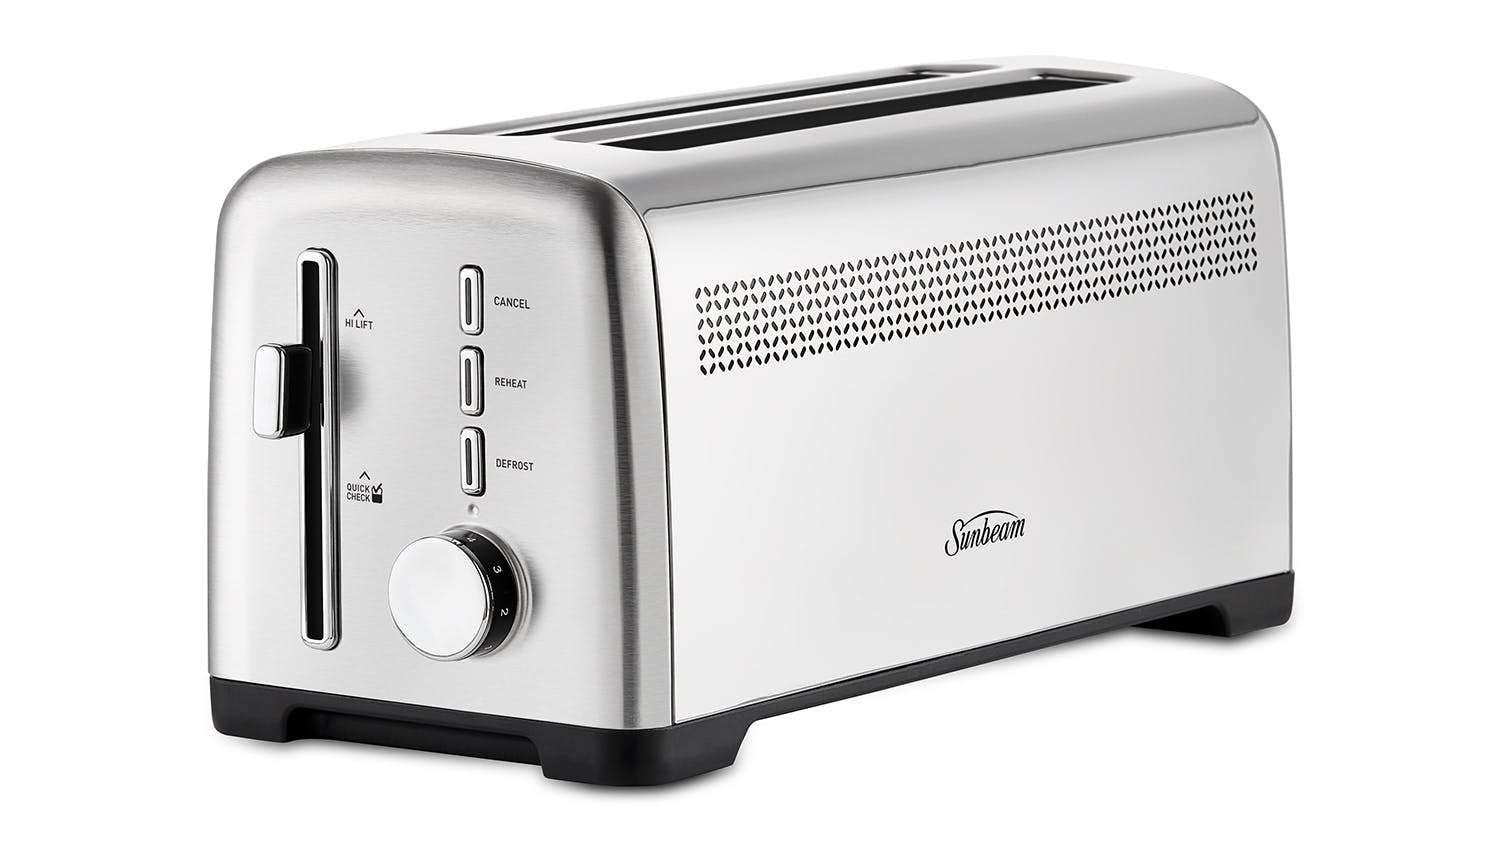 Sunbeam 4-Slice Extra-Wide Toaster, Black, 7 Settings